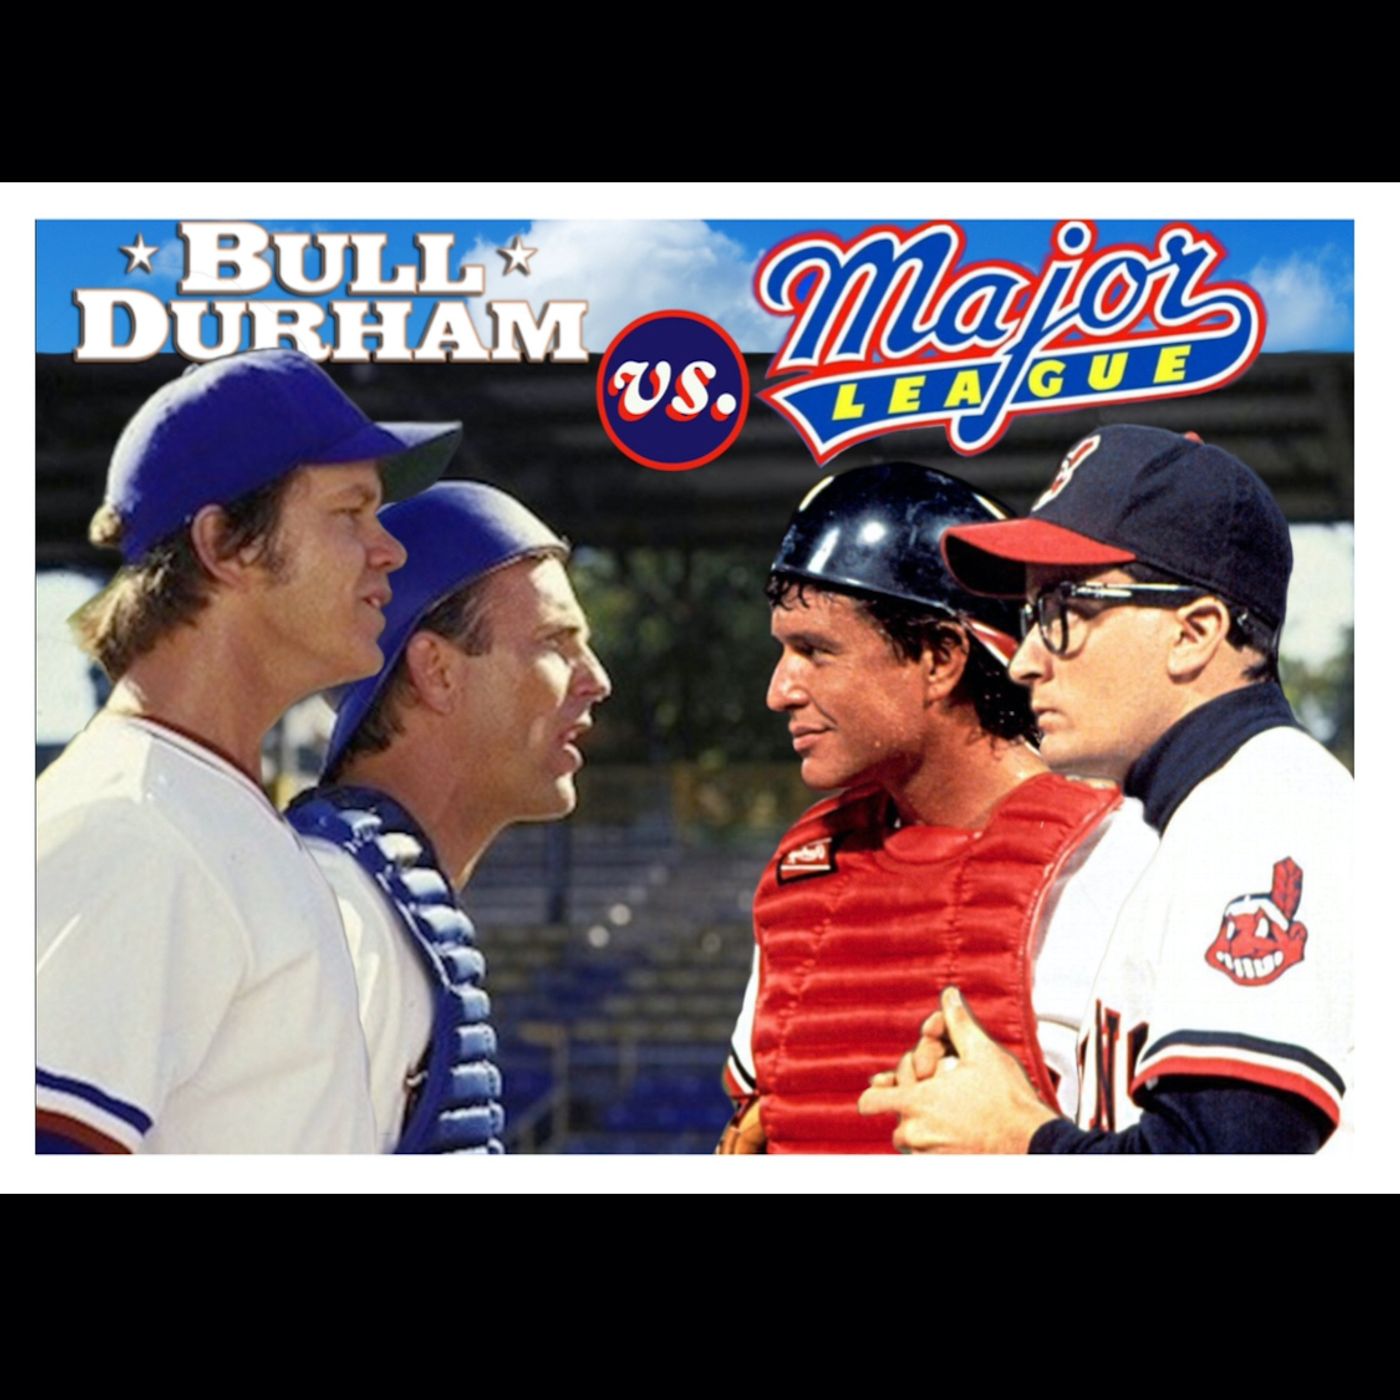 Major League (1989) -or- Bull Durham (1988)